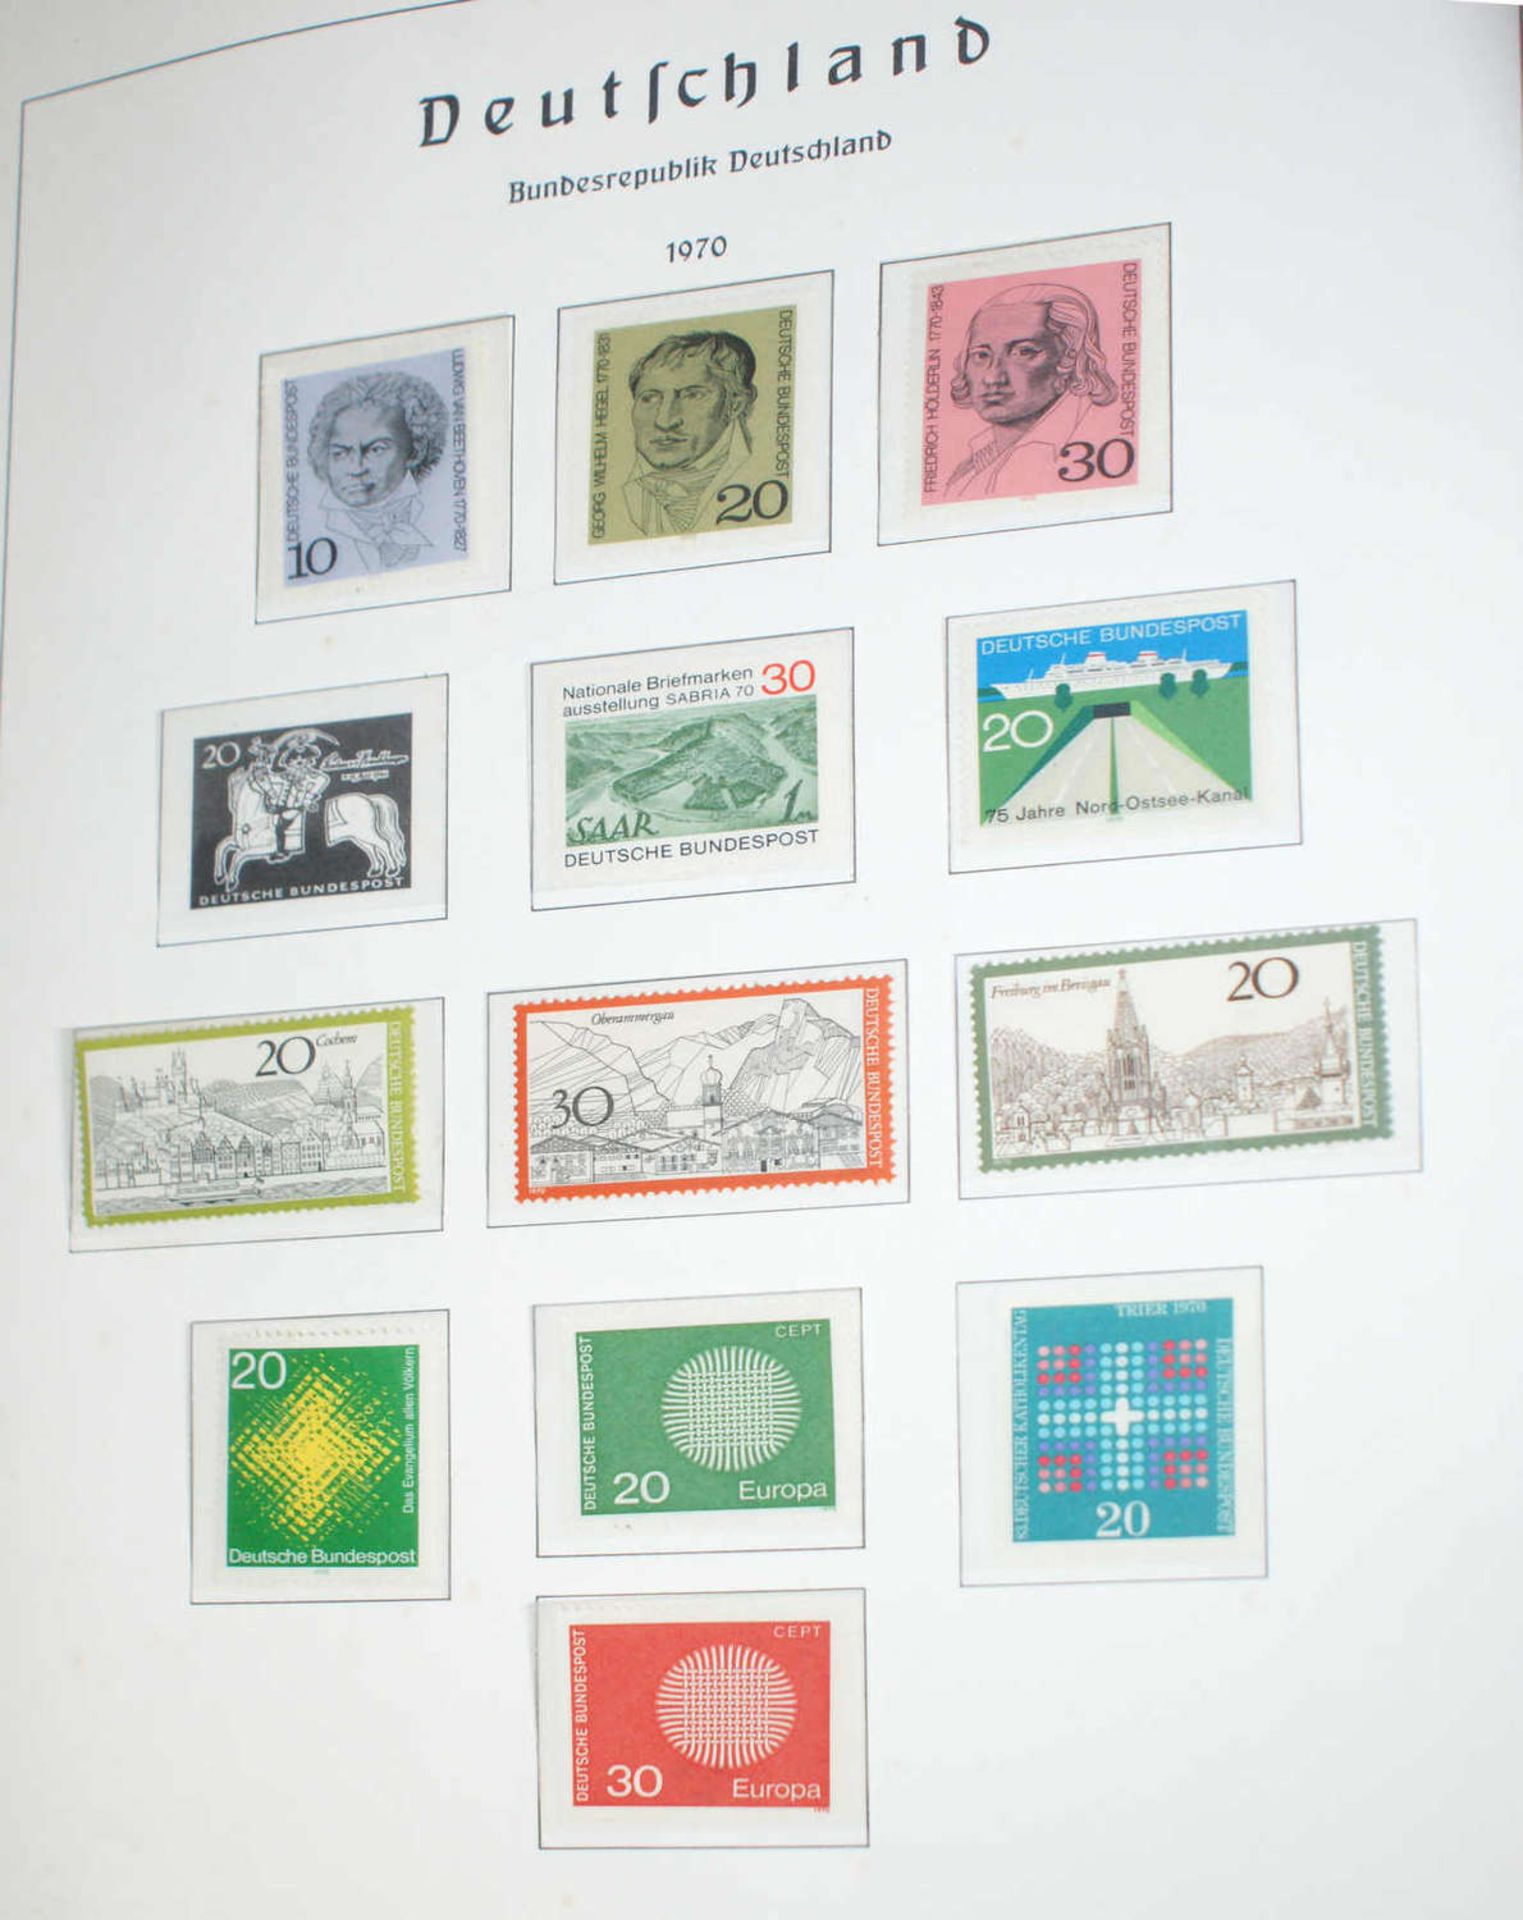 BRD - Briefmarken Dubletten Konvolut, bestehend aus 18 Alben, teilweise schlecht gelagert. - Bild 4 aus 5